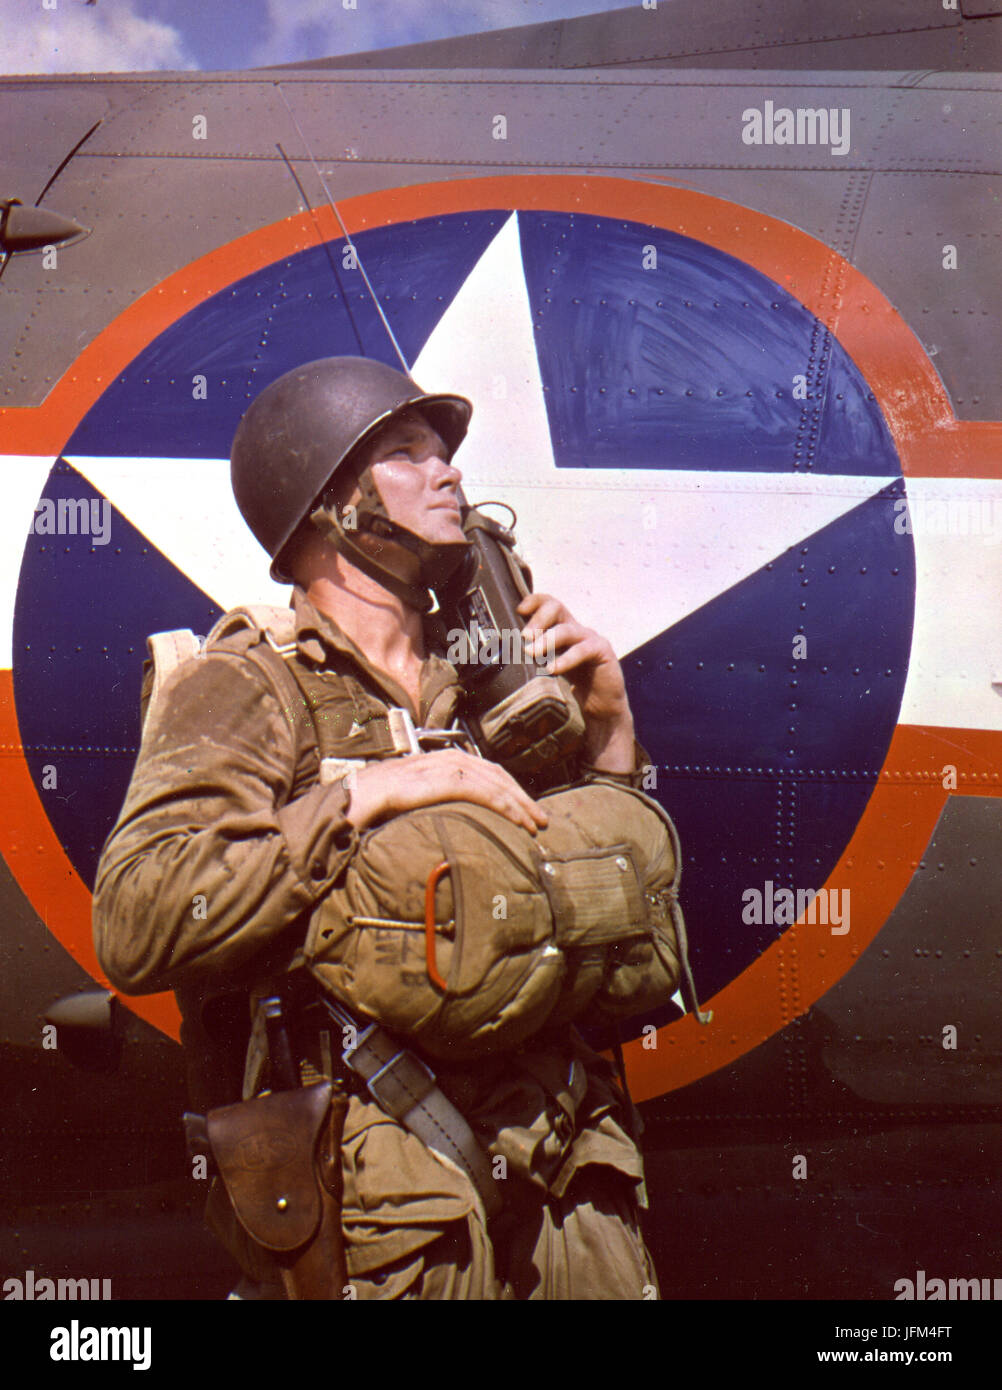 1942 - ein Mitglied der Fallschirm Infanterie anzeigen Feldausrüstung und ein walkie-talkie Stockfoto